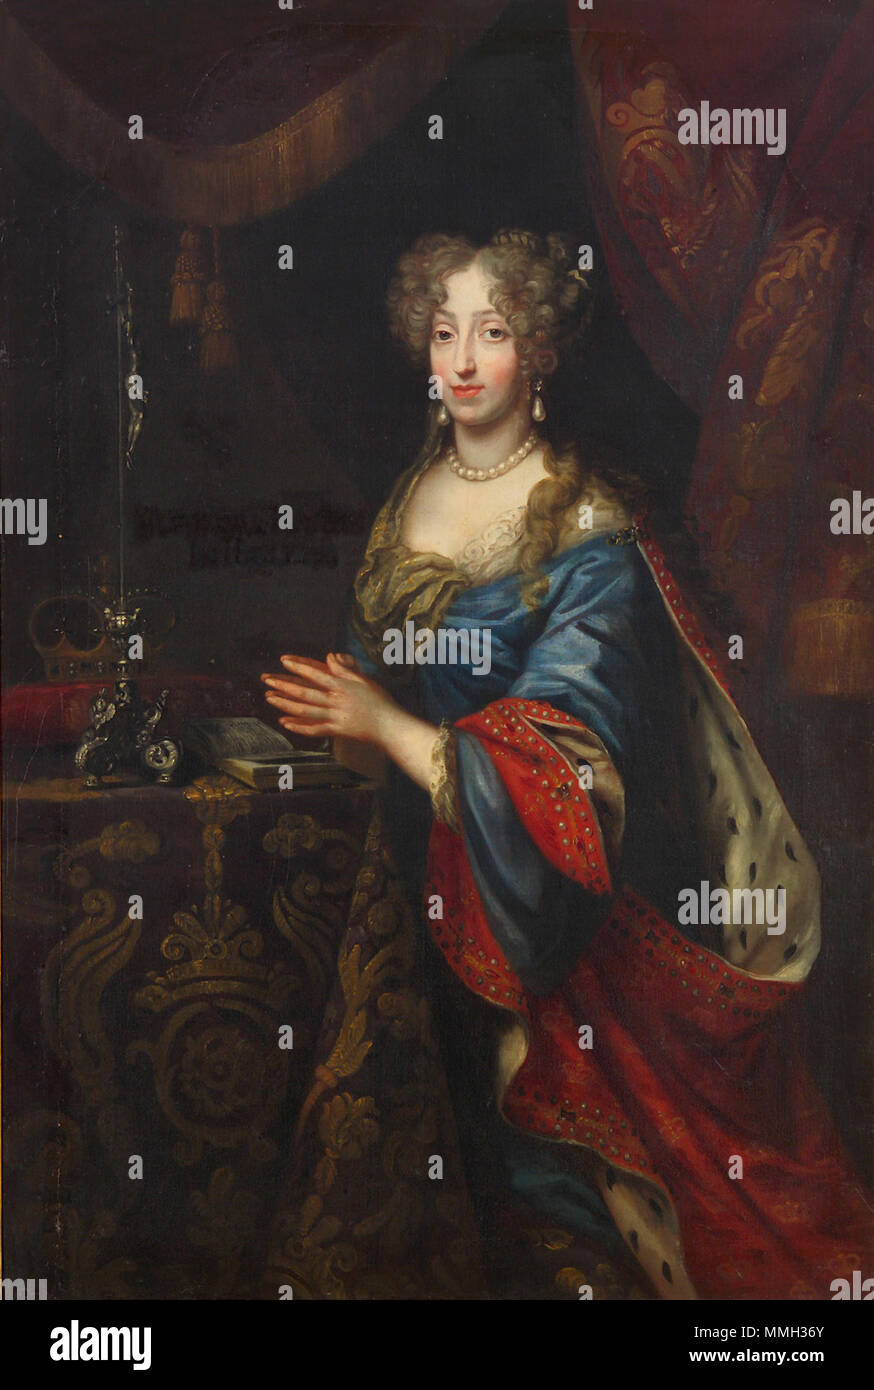 . Fille de fr:Ferdinand III, empereur romain saint, Reine Consort de Pologne, épouse de Michael Wiśniowiecki, roi de Pologne (1640-1673), à partir de 1678 épouse de Charles V (1643-1690), Prince de Titulature Lorraine et bar, le maréchal autrichien. Archduchesse Josépha de Habsbourg (1653-1697). 1684. Aliénor d'Autriche Banque D'Images